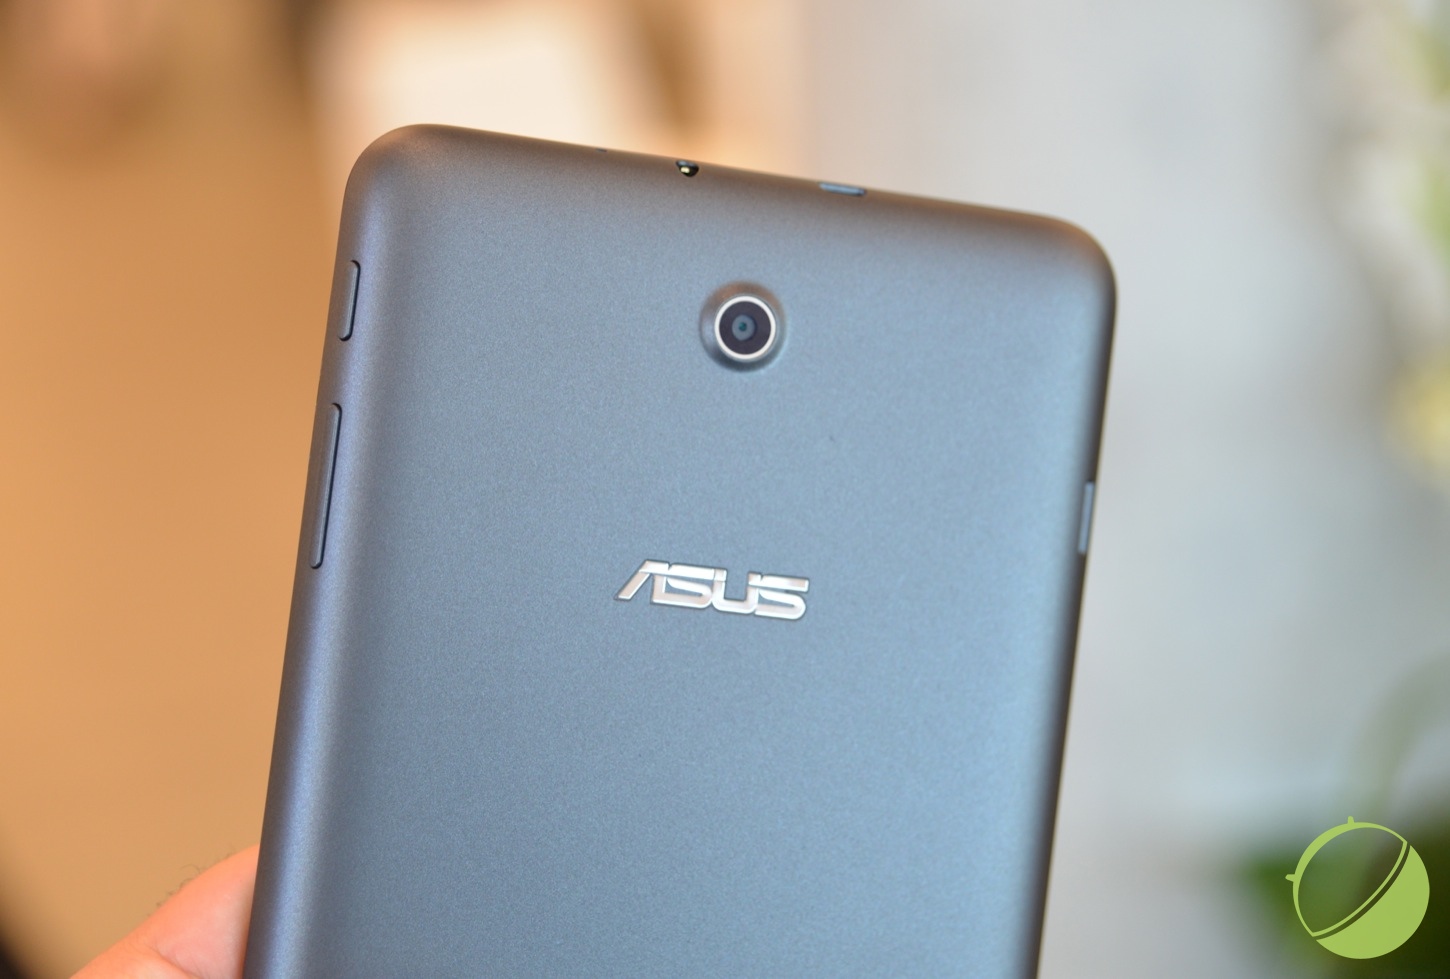 L'Asus FonePad : une tablette 7 pouces avec des fonctions téléphone (vidéo)  - IDBOOX